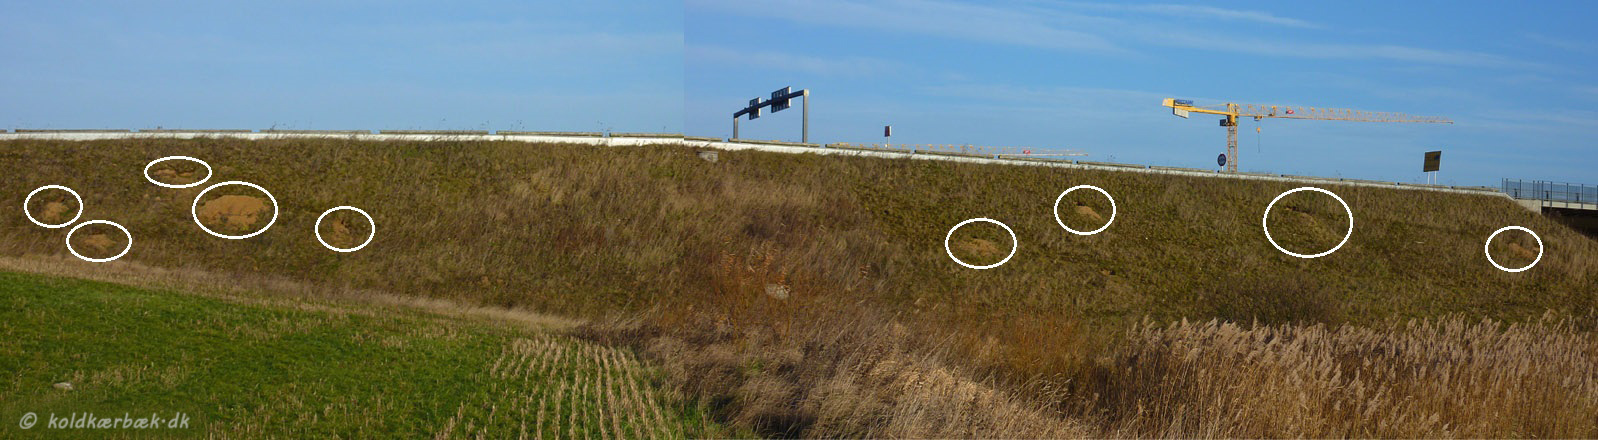 Ræve og Grævlingegrave tæt på Koldkær Bæk. 1-12-2013. Kun ca. 200 m nord for Koldkær Bæks's udløb i Egå, går Søftenmotervejen hen over Egå. Der er kørt i tusindevis af kubikmeter stabilt grus på, for at sikre en passende vejhøjde over åen. Det er noget Rævene og sandsynligvis også Grævling har udnyttet. Det er nemt at grave gange i det stabile grus. Ca. 10 grave er det blevet til. Dog er de ikke særlig stabile - nogle grave ser ud til at være styrtet sammen :-( 